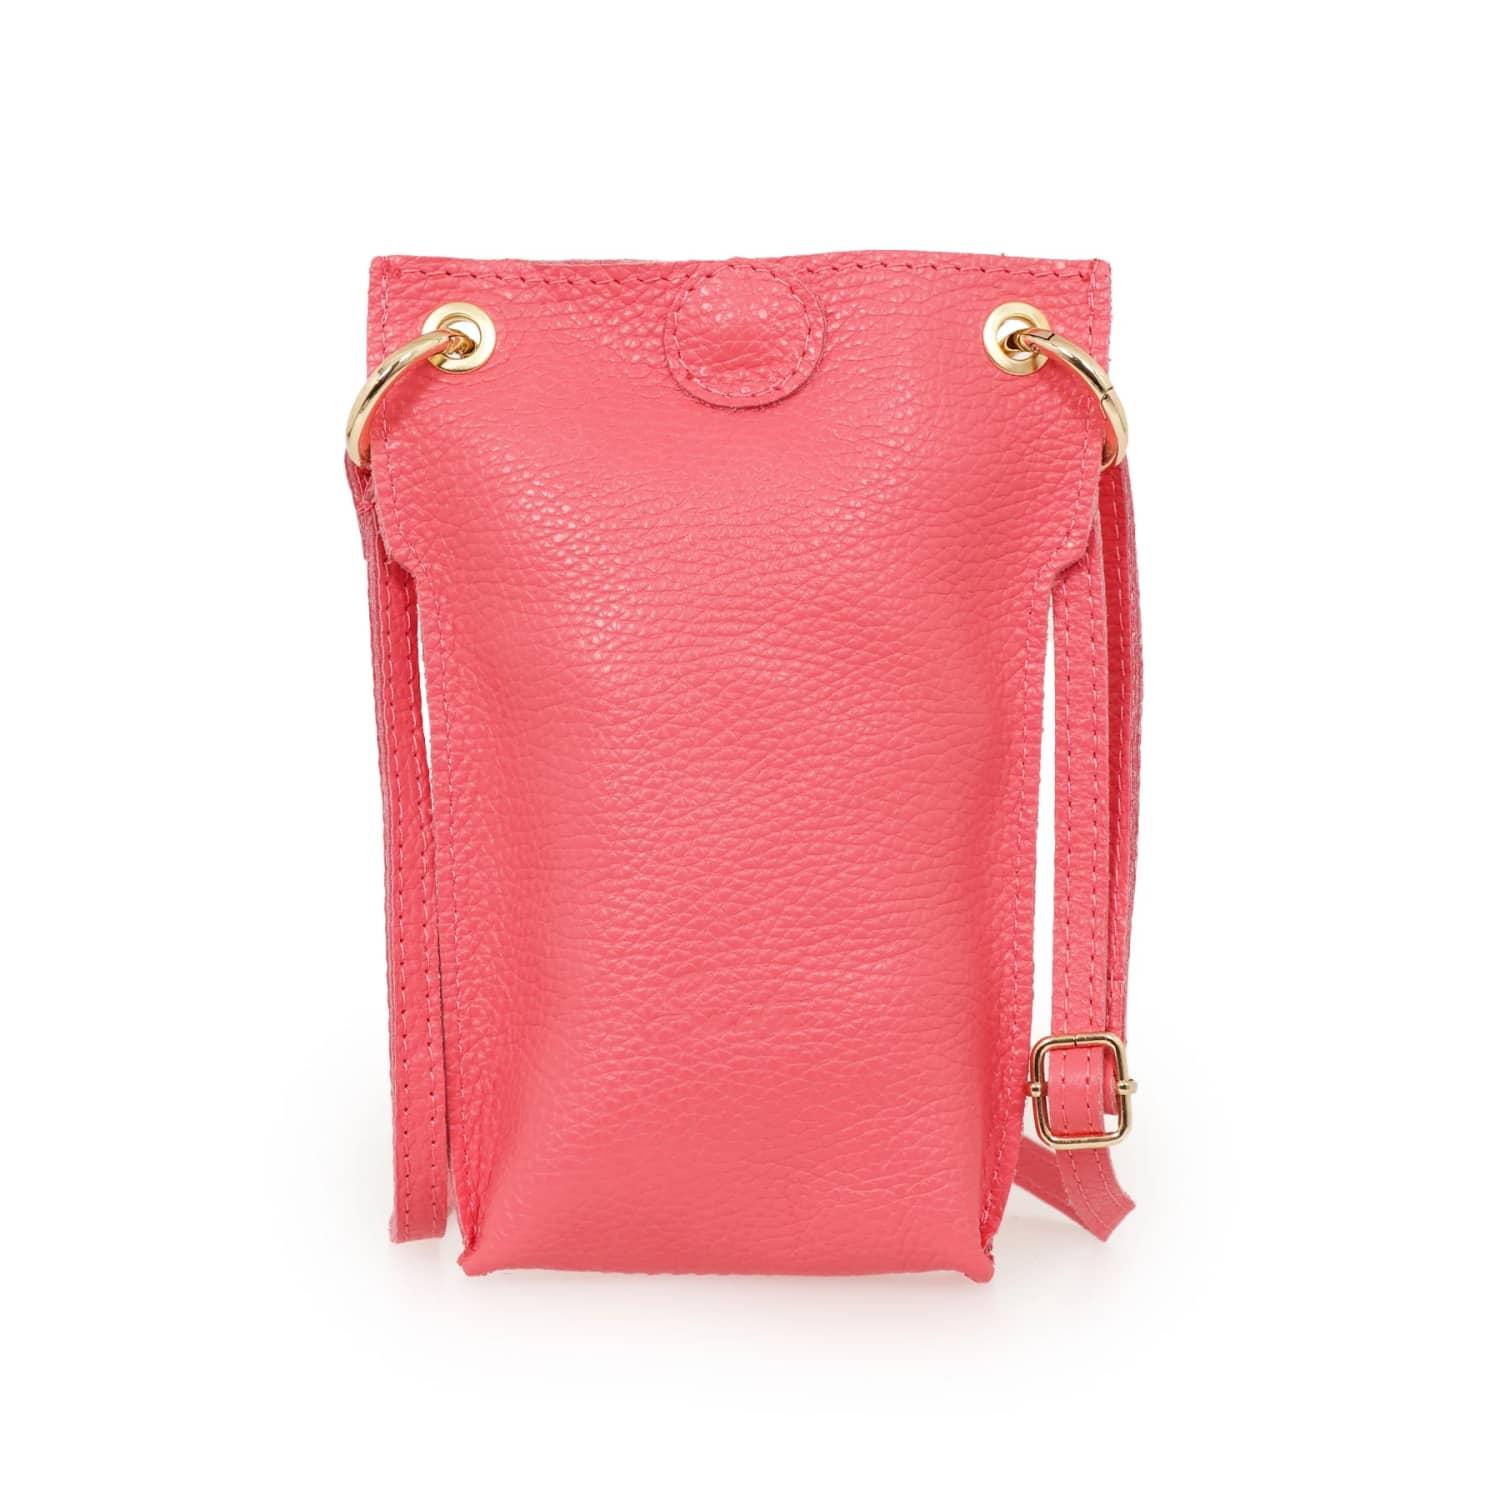 Melie Bianco Carrie Bag - Luxury Faux Leather Shoulder Bag - Vegan